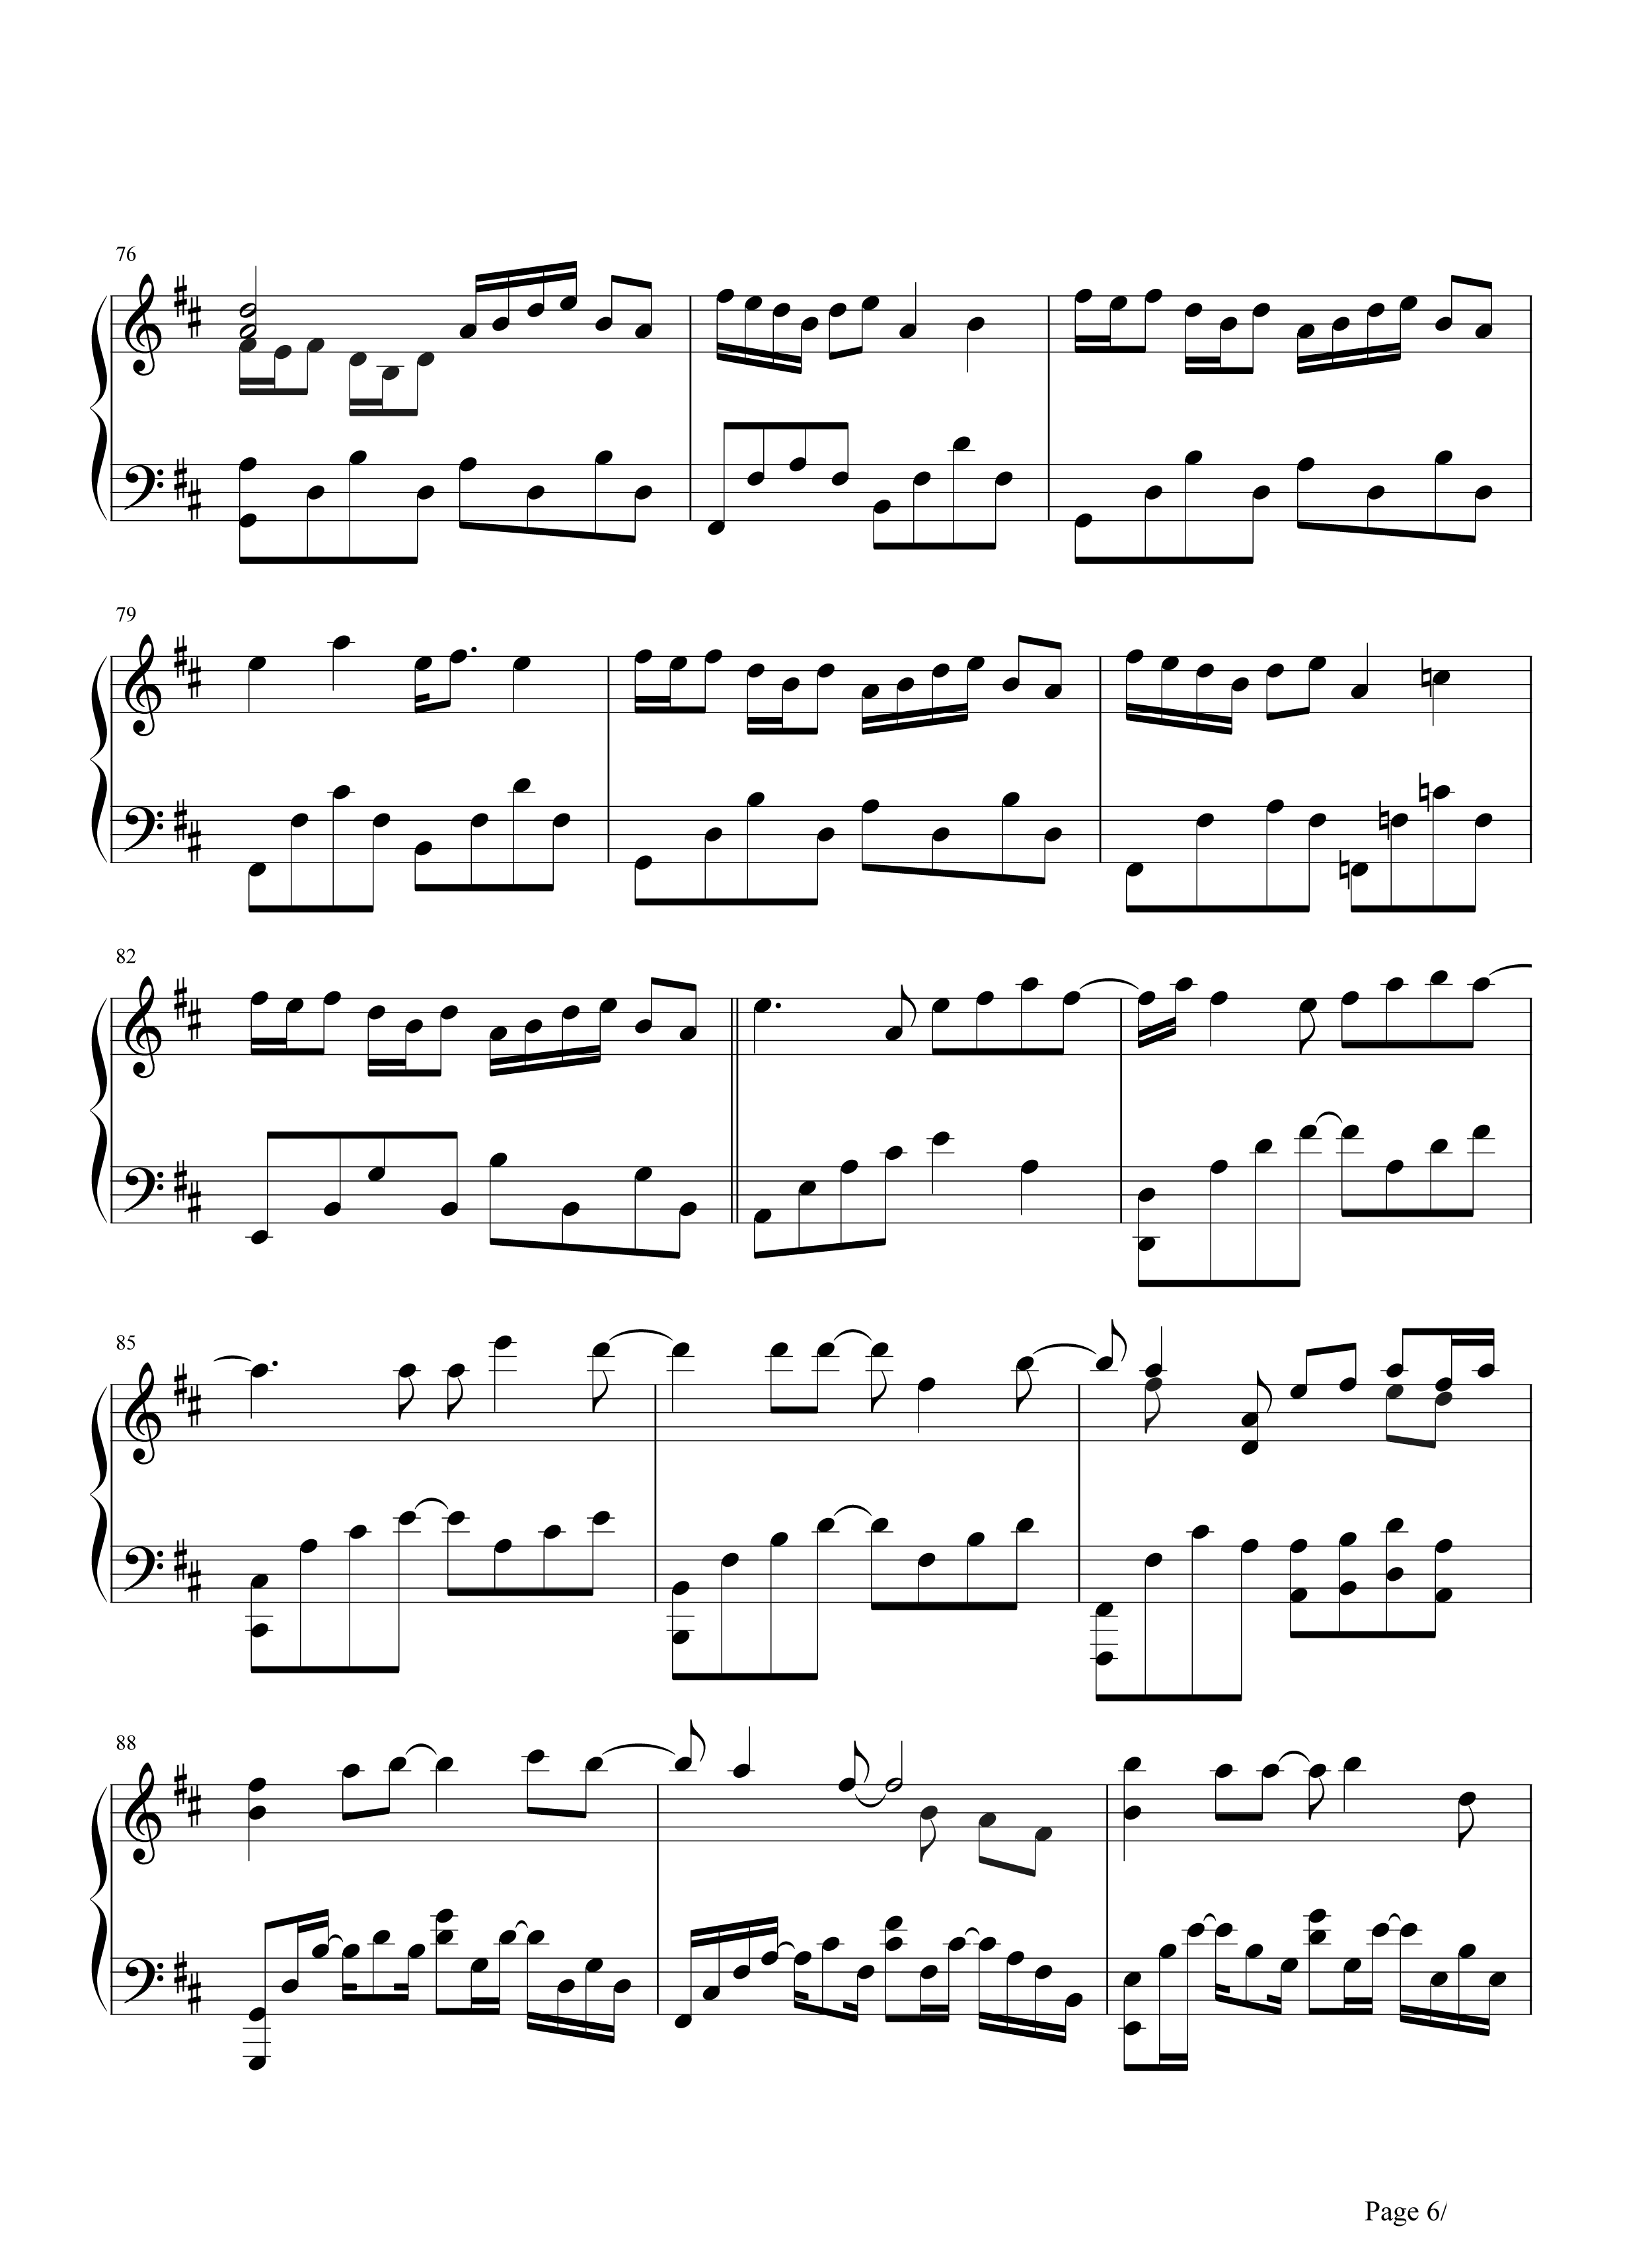 月牙湾钢琴谱-飞儿乐团-每一段时光只要放在心上就是地久天长6